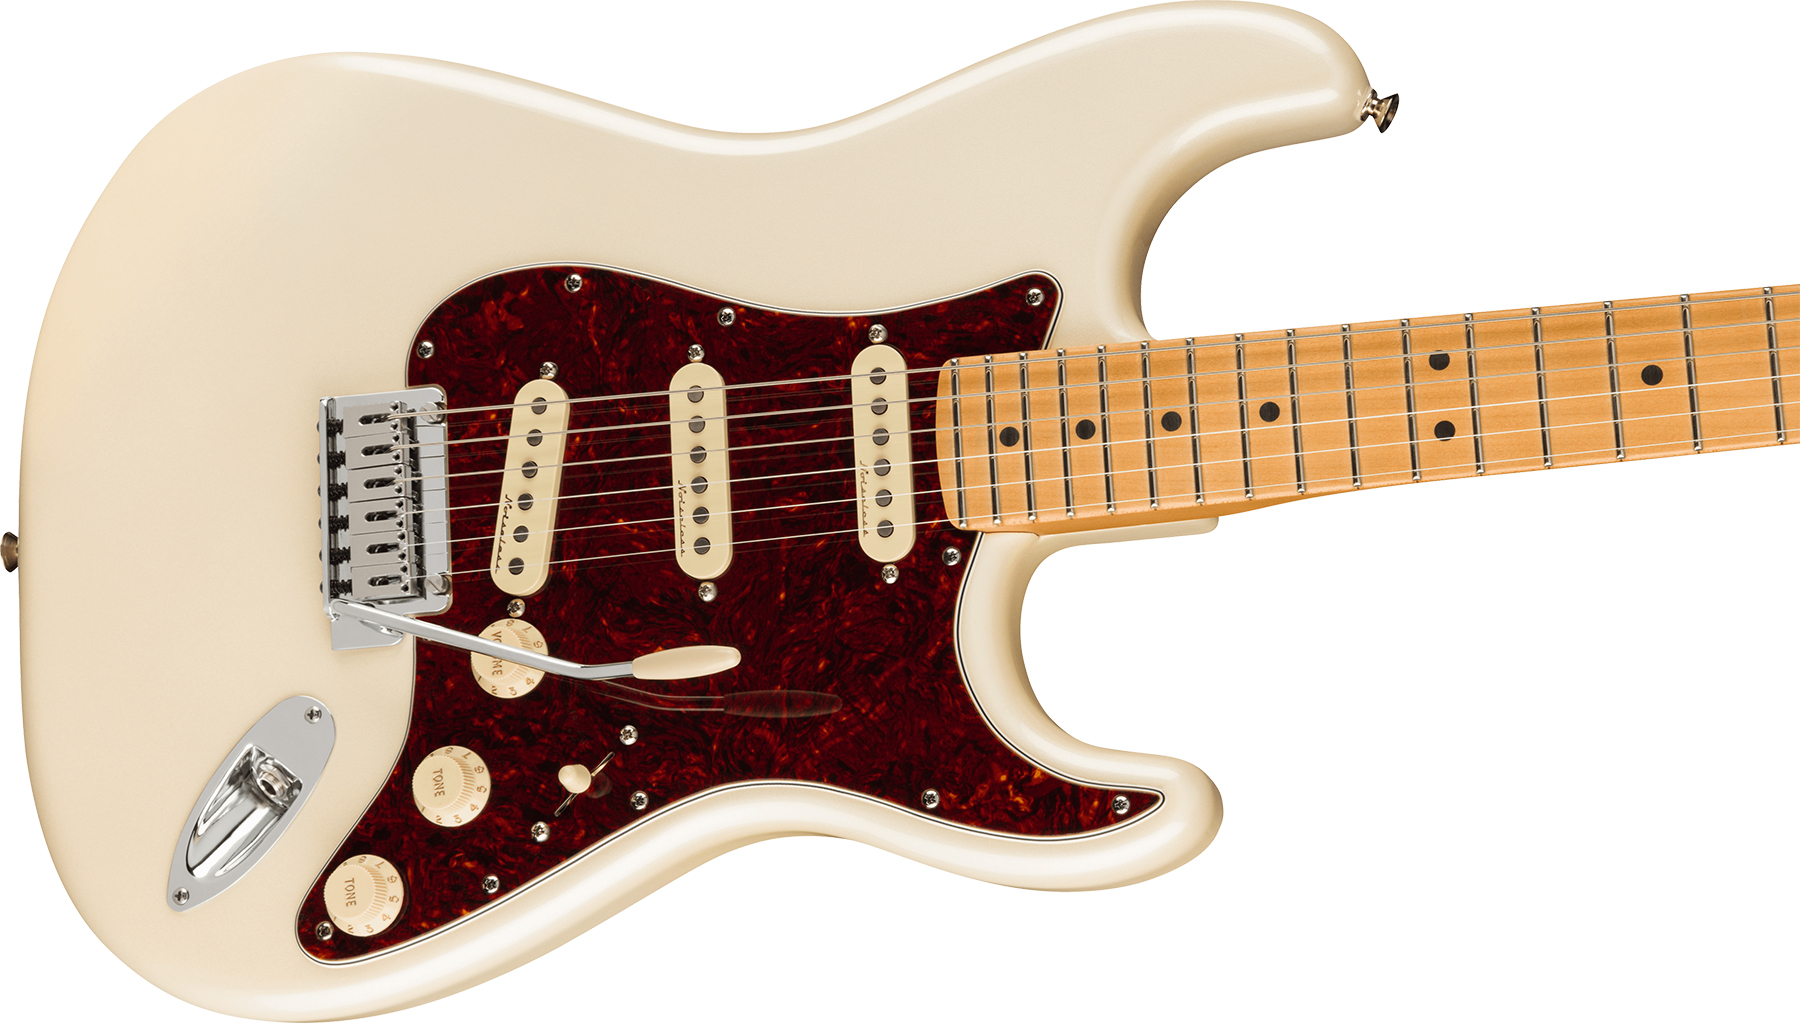 Fender Strat Player Plus Lh Mex Gaucher 3s Trem Mn - Olympic Pearl - Linkshandige elektrische gitaar - Variation 2